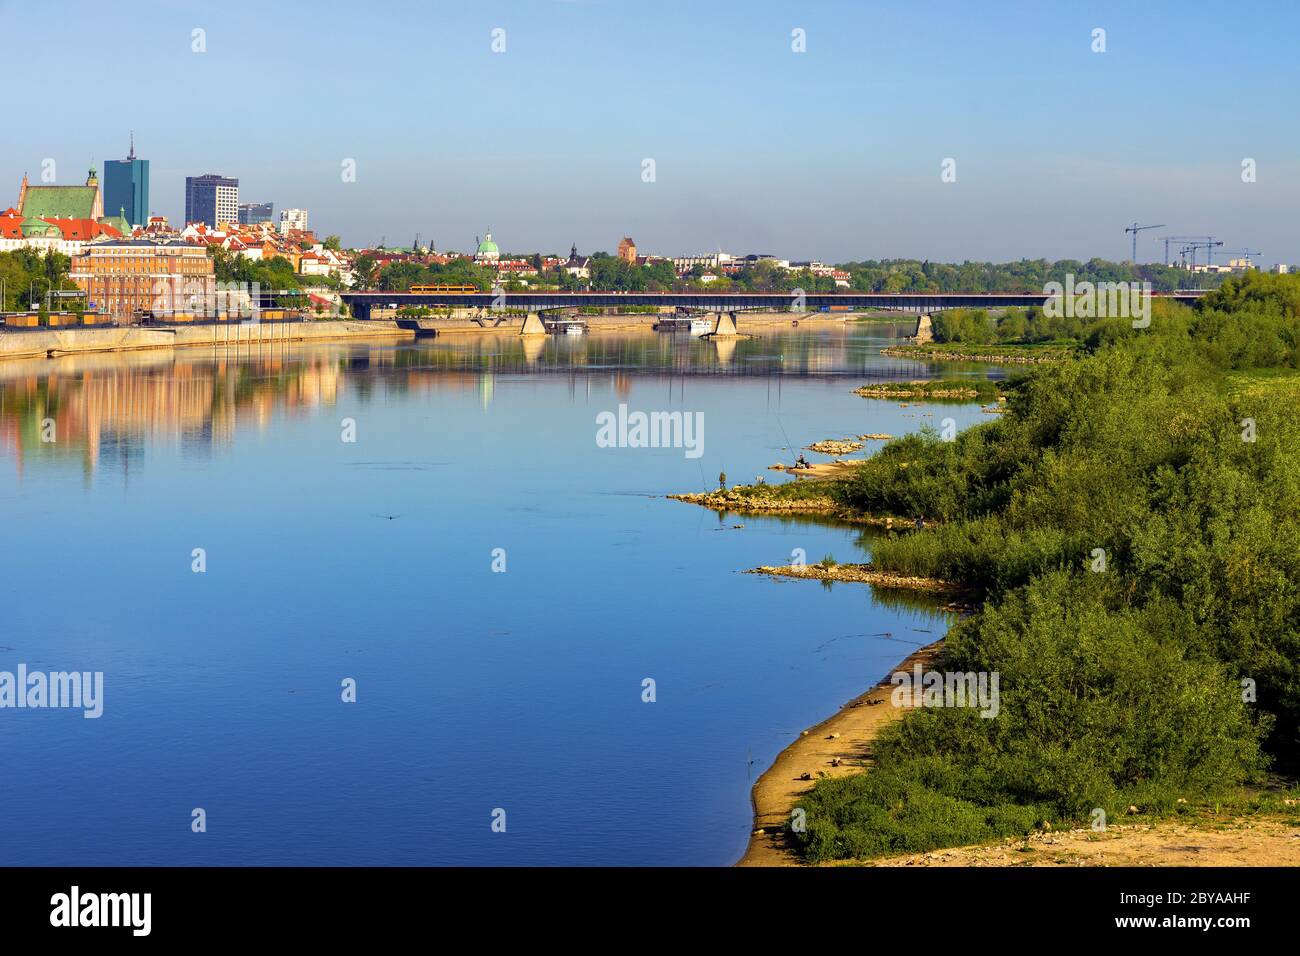 Varsavia, Mazovia / Polonia - 2020/05/09: Vista panoramica della storica città vecchia di stare Miasto e dei quartieri settentrionali lungo il fiume Vistola Foto Stock